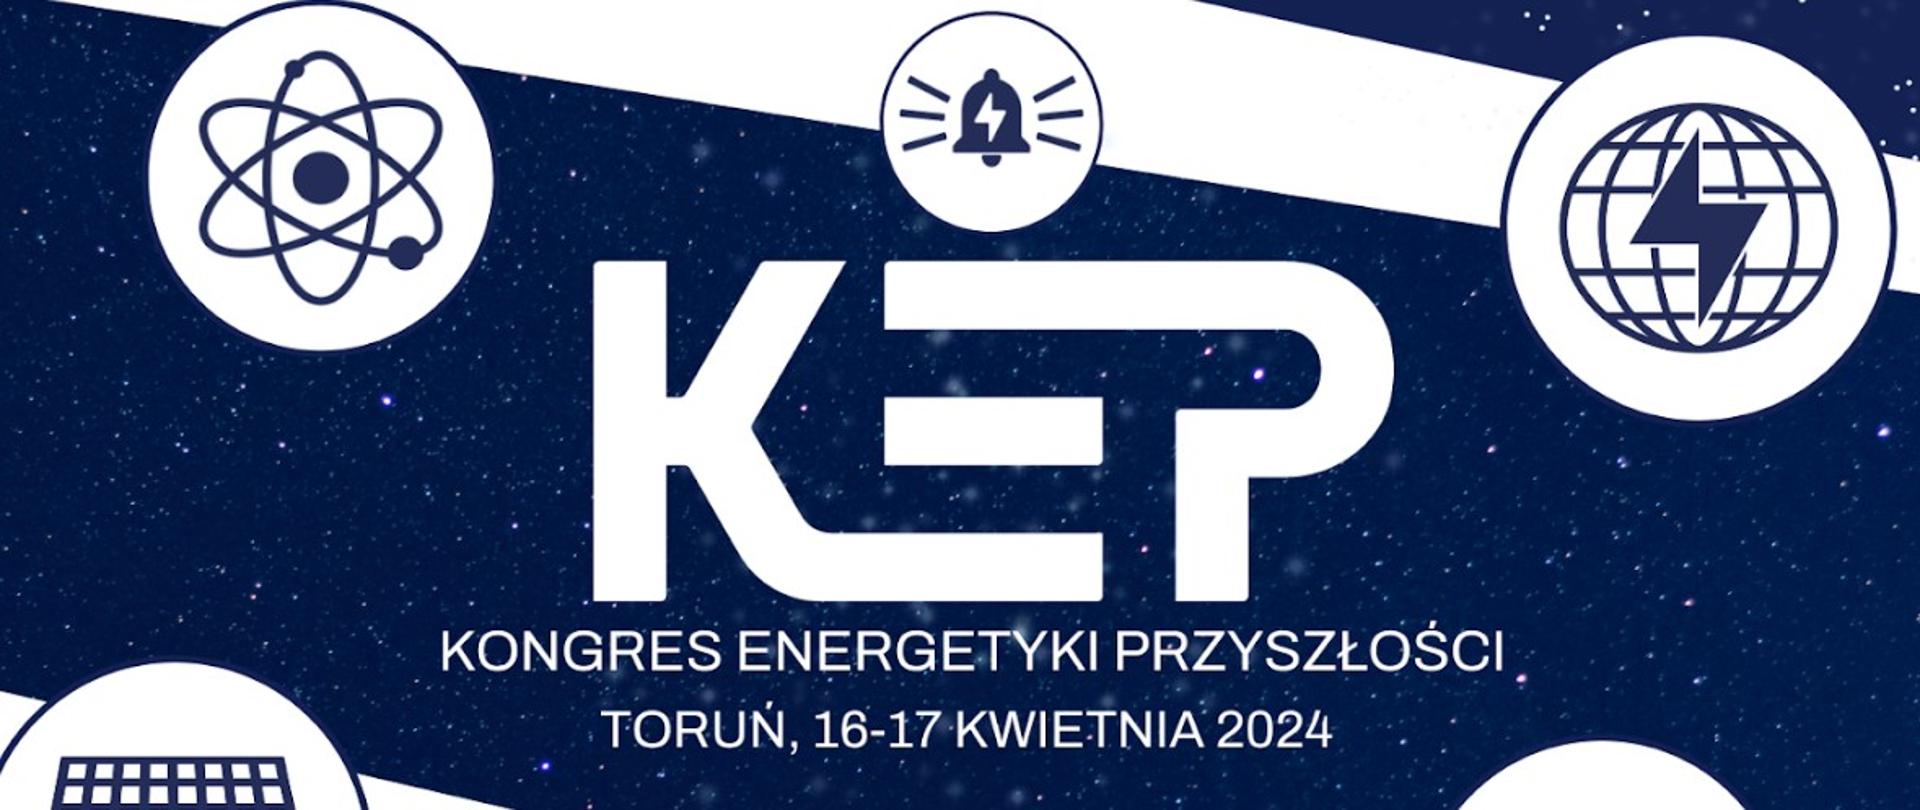 Grafika ilustracyjno-informacyjna o odbywającym się w Toruniu w dniach 16-17 kwietnia 2024 Kongresie Energetyki Przyszłości.